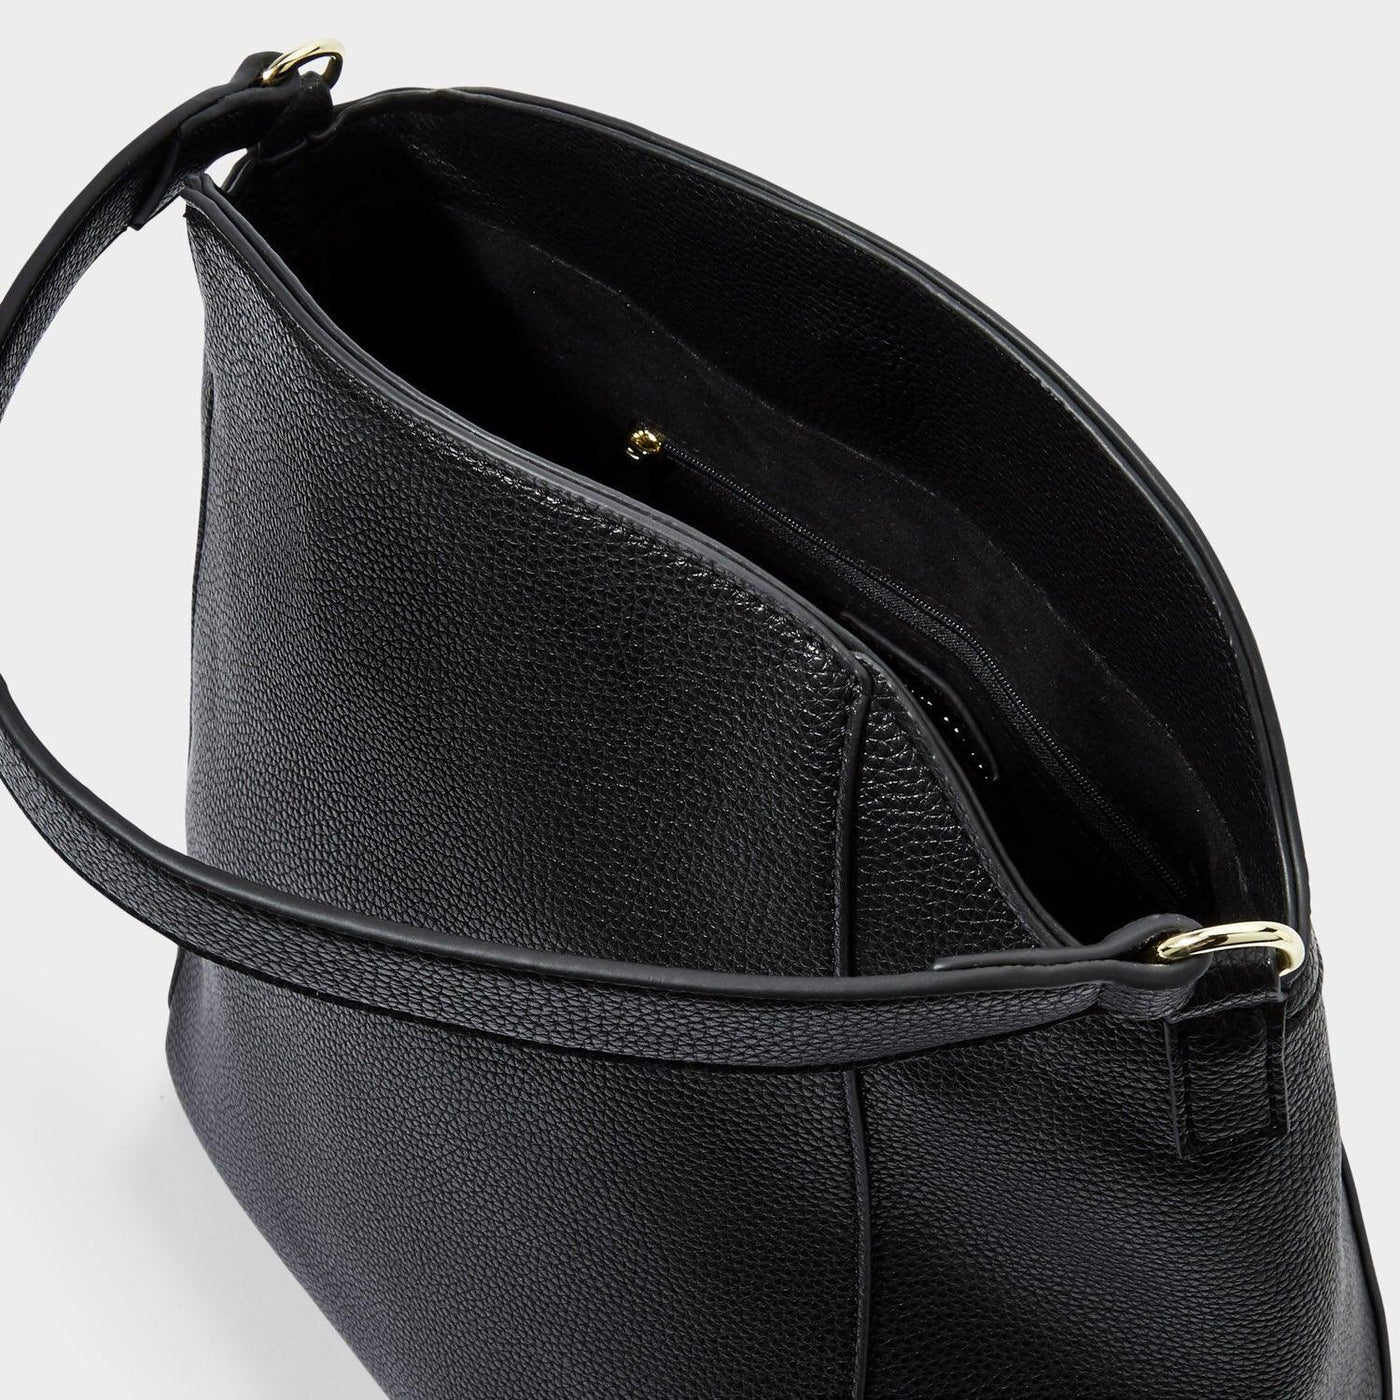 Inside look at the black fold top handbag